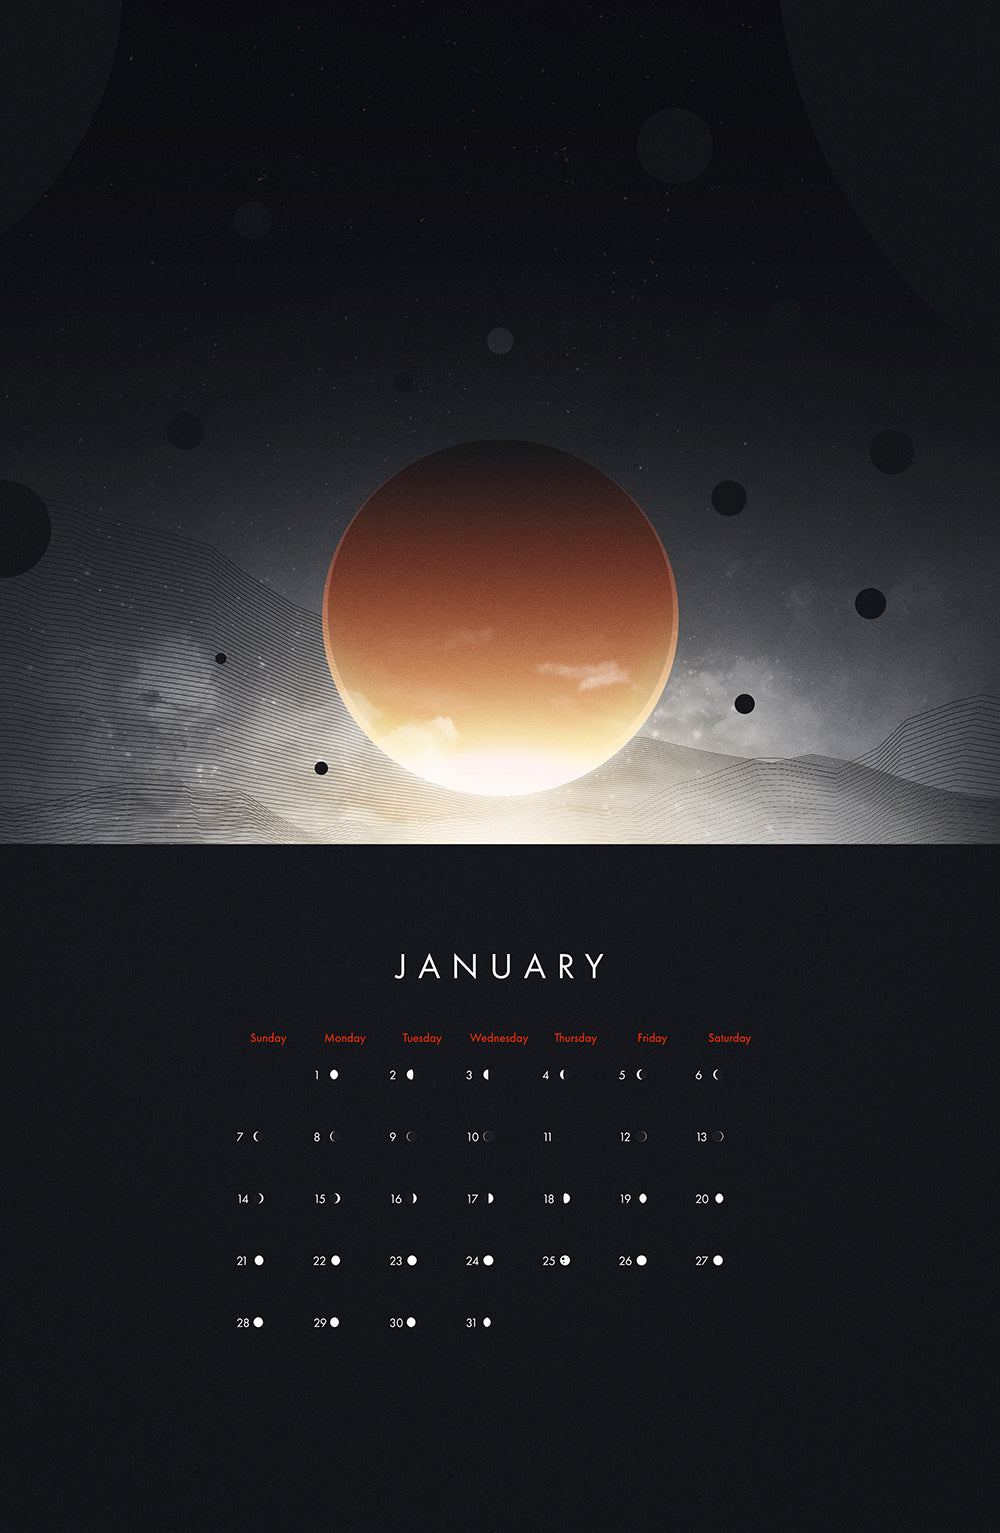 2024 Heavenly Spheres Calendar